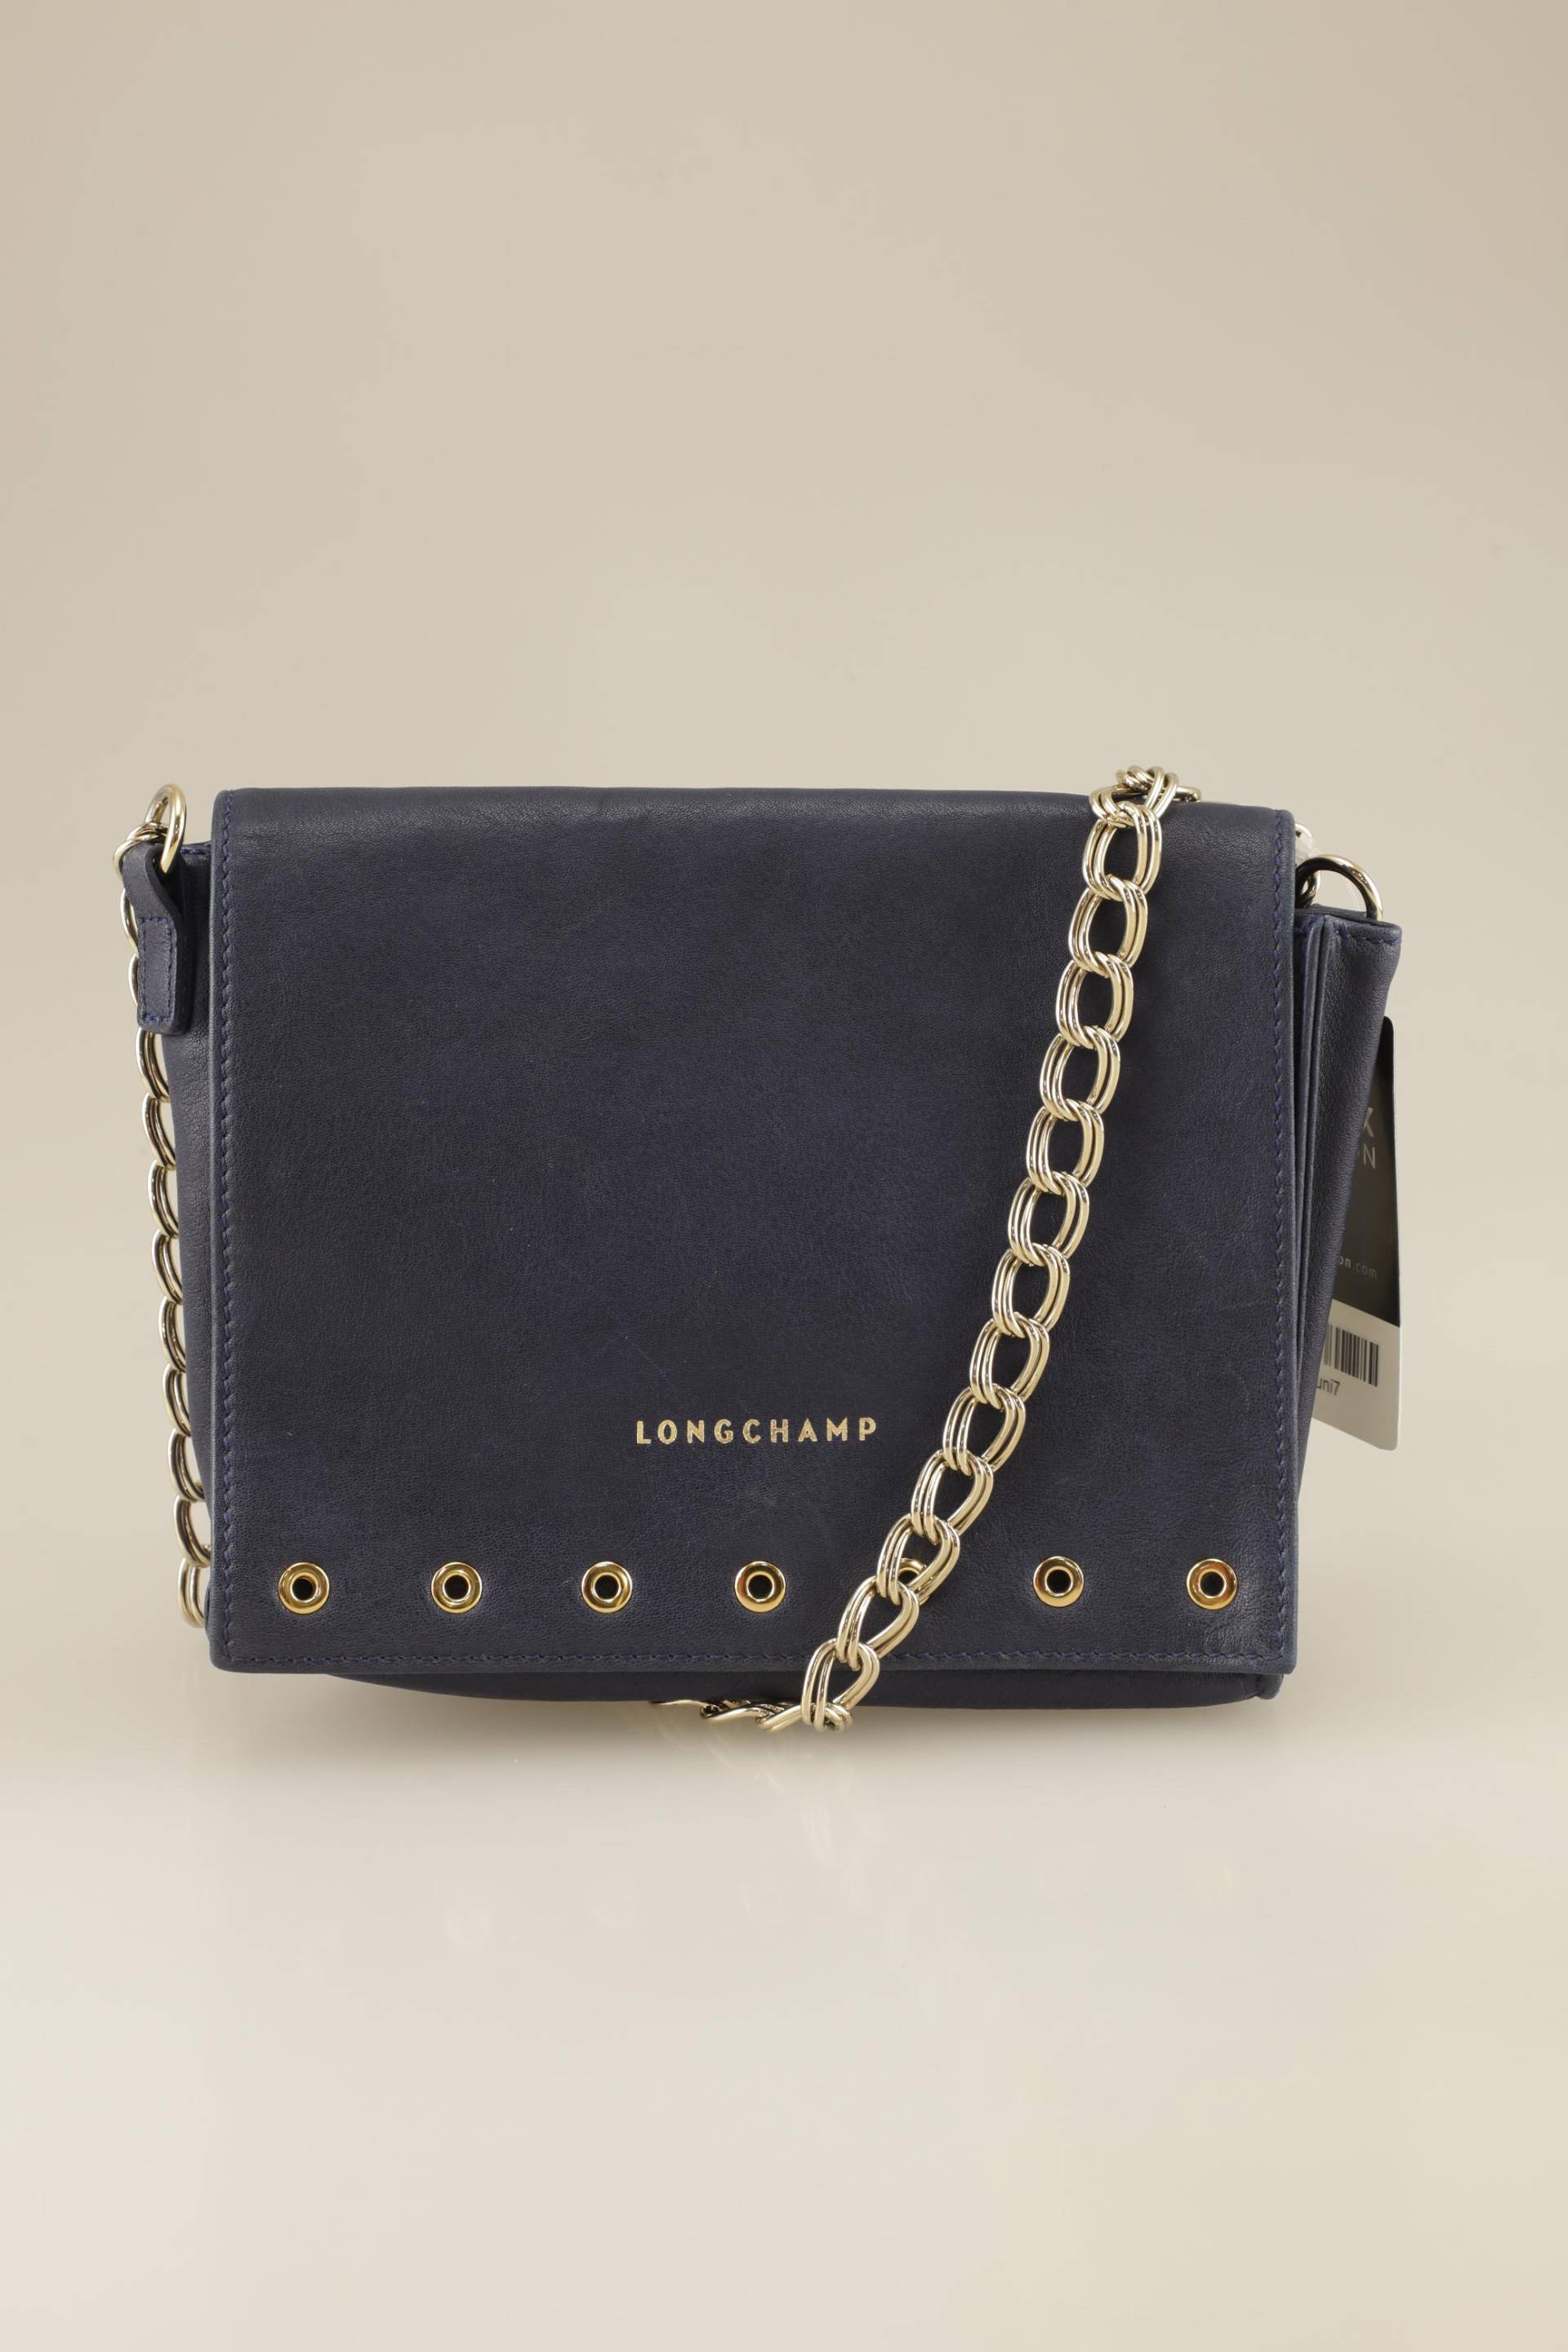 Longchamp Damen Handtasche, marineblau, Gr. von Longchamp